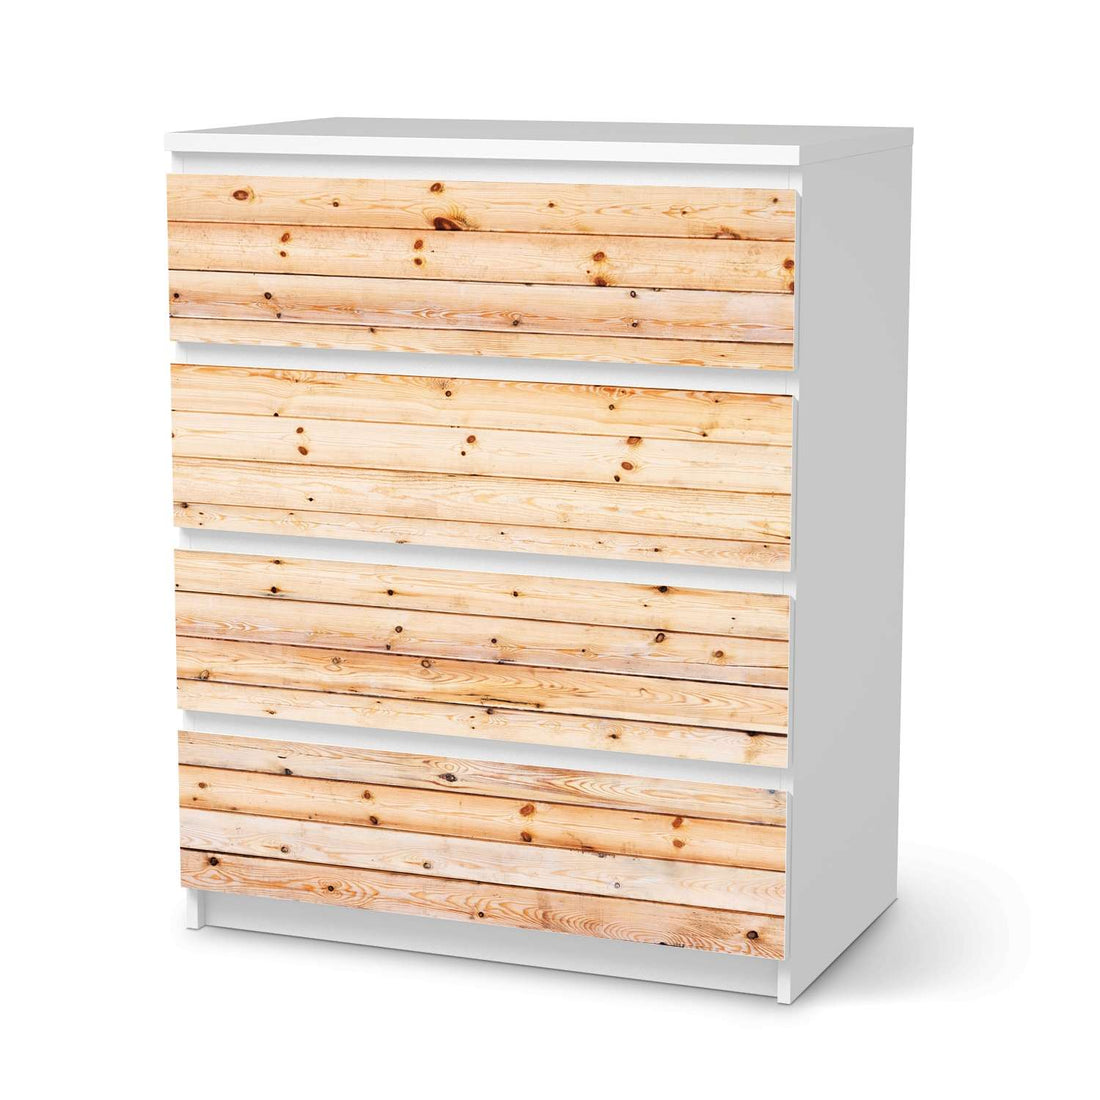 Folie für Möbel Bright Planks - IKEA Malm Kommode 4 Schubladen  - weiss